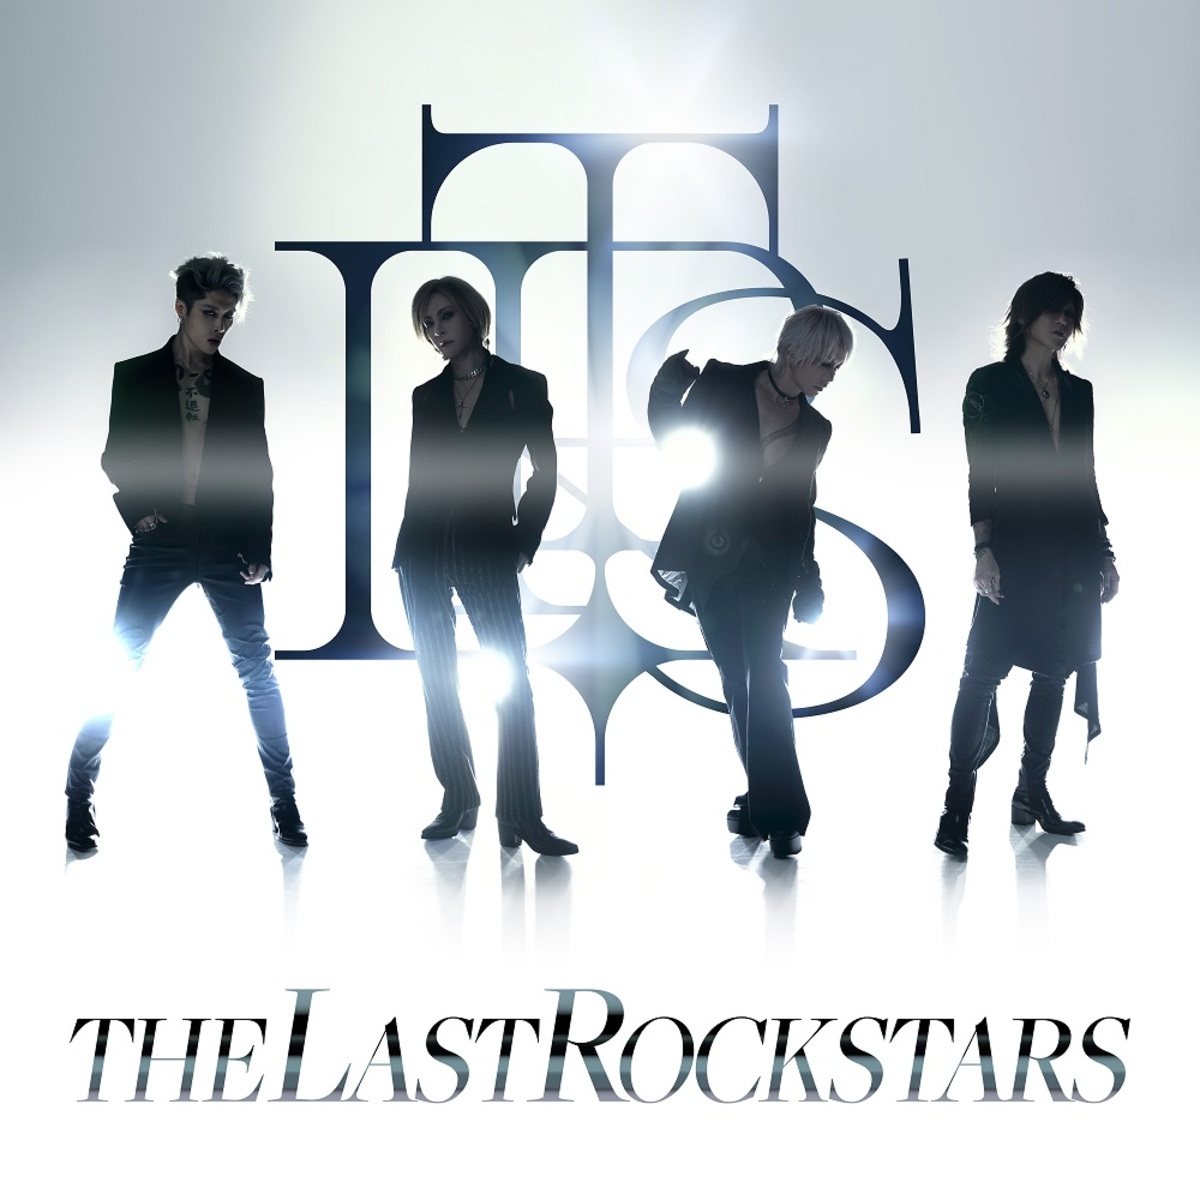 THE LAST ROCKSTARS、1stシングル「THE LAST ROCKSTARS (Paris Mix 